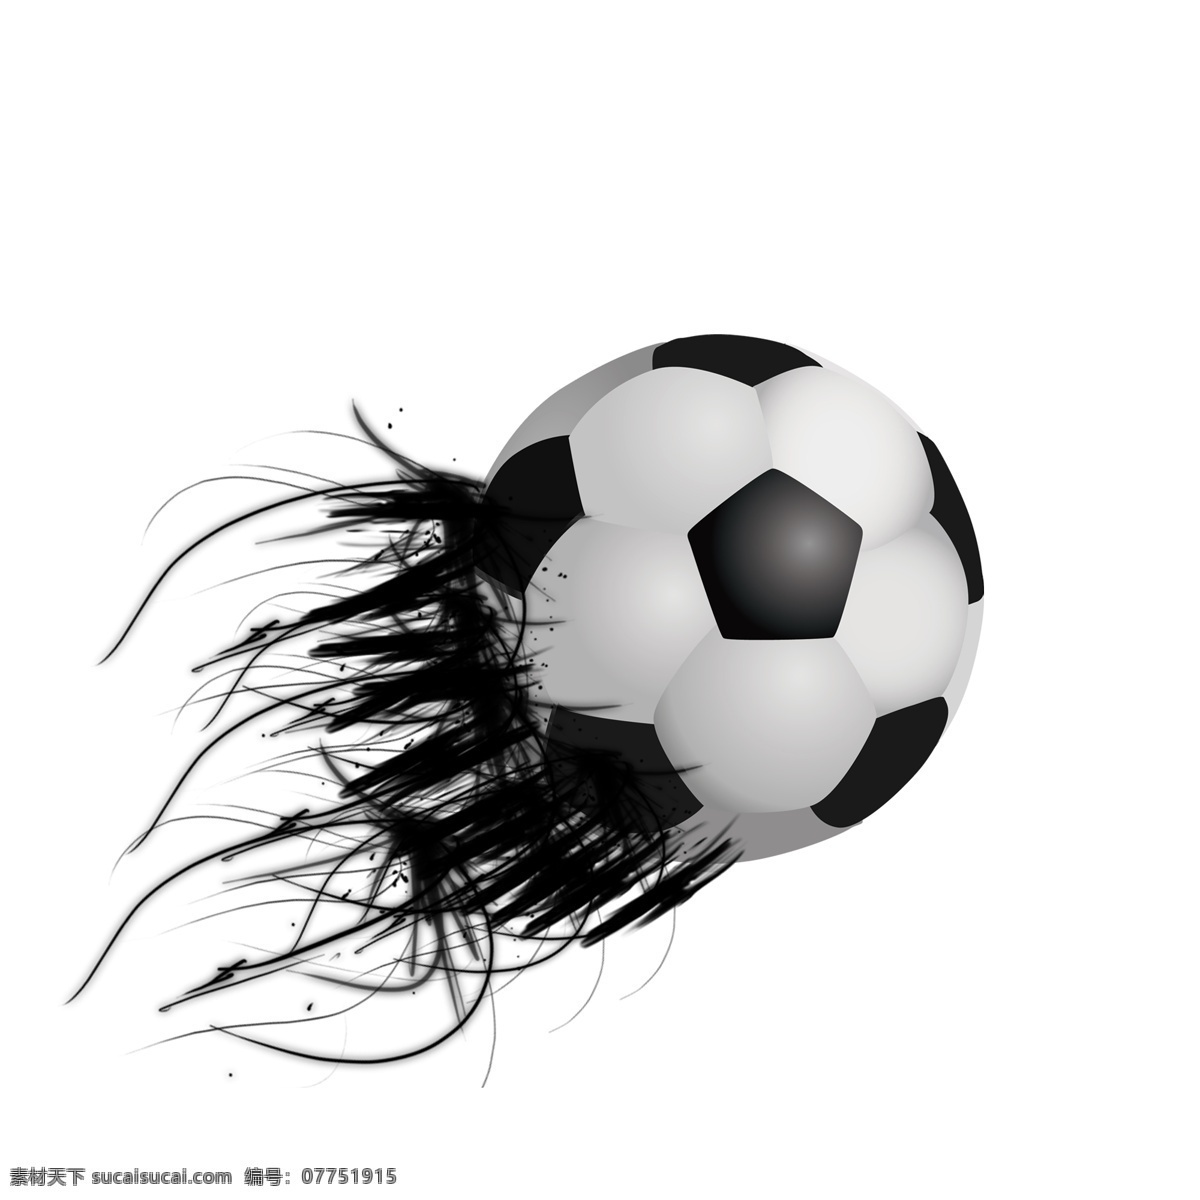 黑白 时尚 创意 世界杯 足球 大气 几何 线条 世界杯足球 喷溅 体育比赛 足球比赛 特效 墨点 足球特效